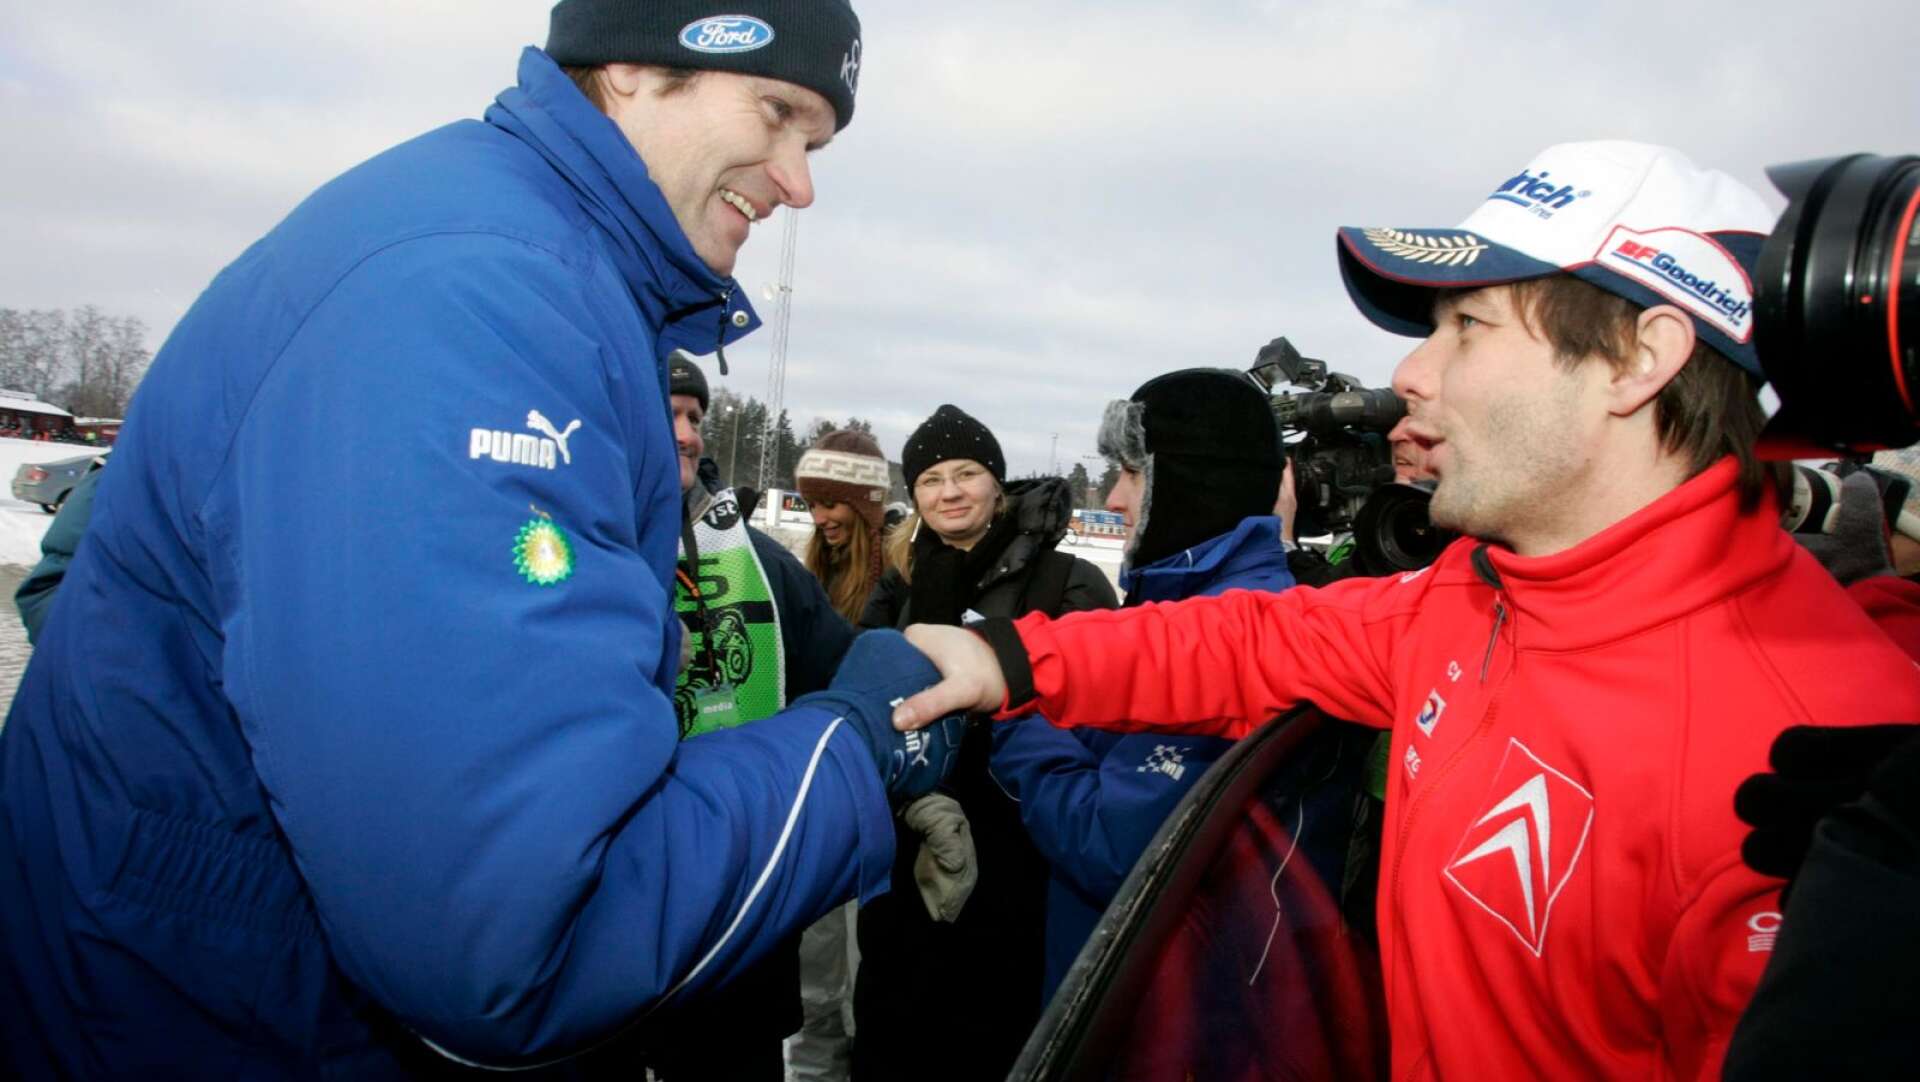 Marcus Grönholm (vänster) uppges vara klar för Svenska rallyt och gör i så fall VM-comeback efter nio års uppehåll. Niofaldige världsmästaren Sebastien Loeb är sedan tidigare klar för start. Här syns de båda i Svenska rallyt 2007.